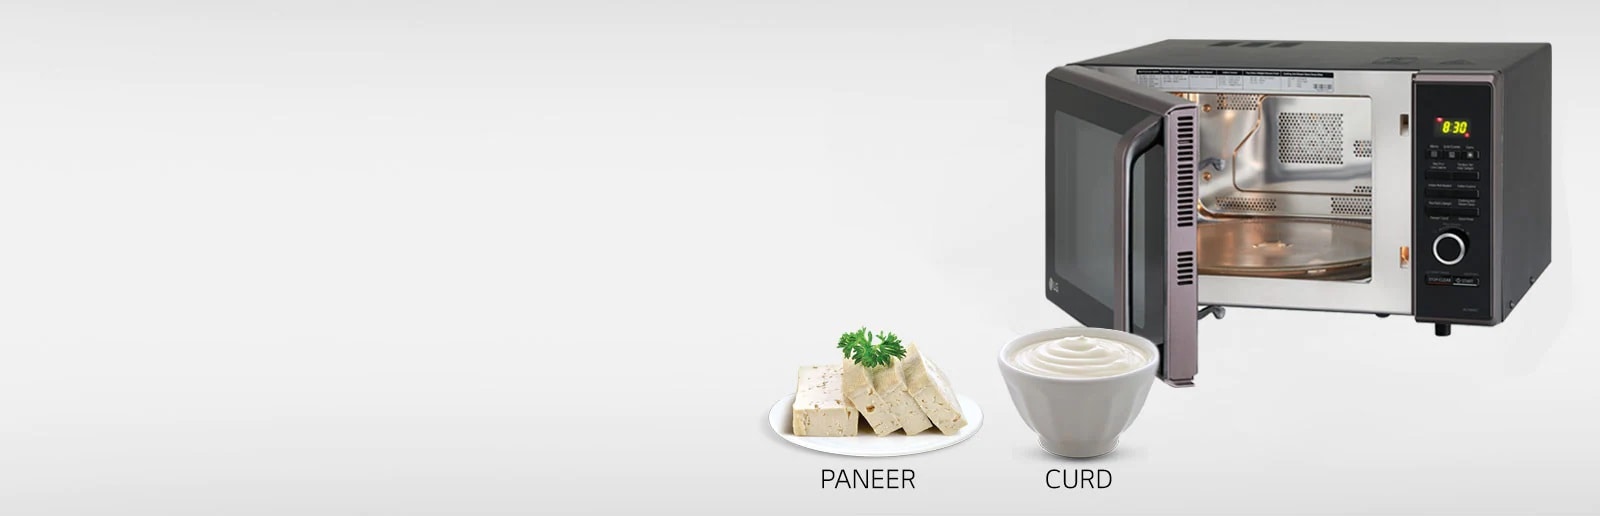 LG Paneer/Curd Microwave Oven